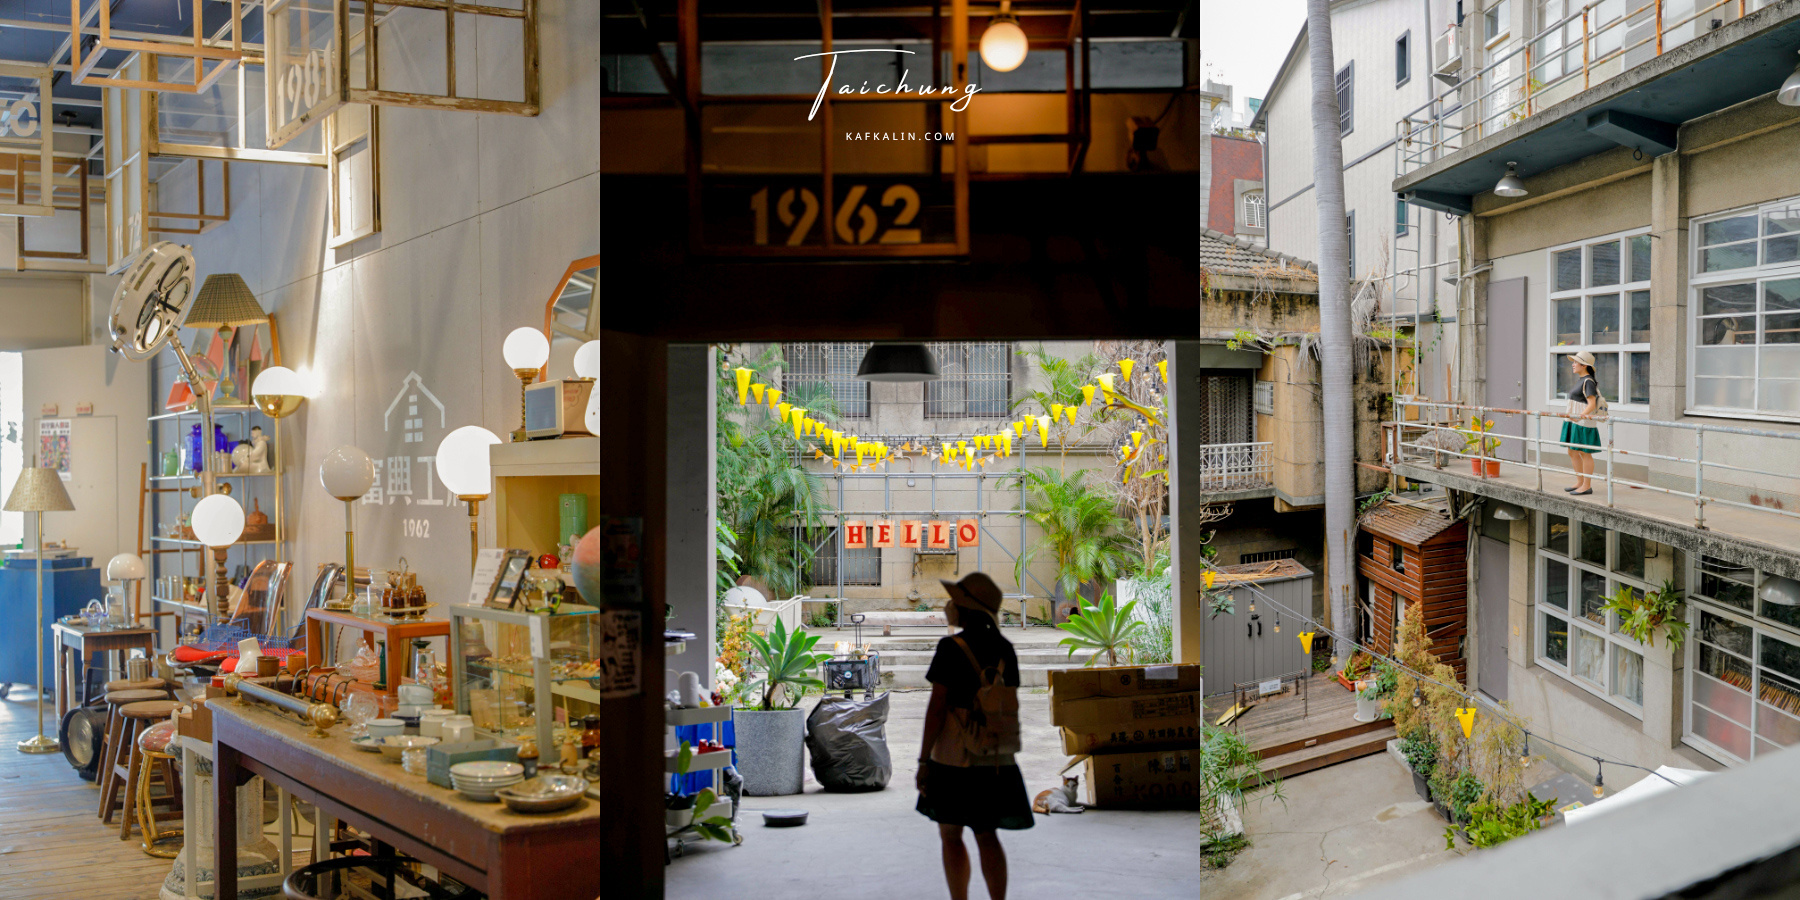 延伸閱讀：台中富興工廠1962，老工廠新景點咖啡餐廳與必逛小店停車